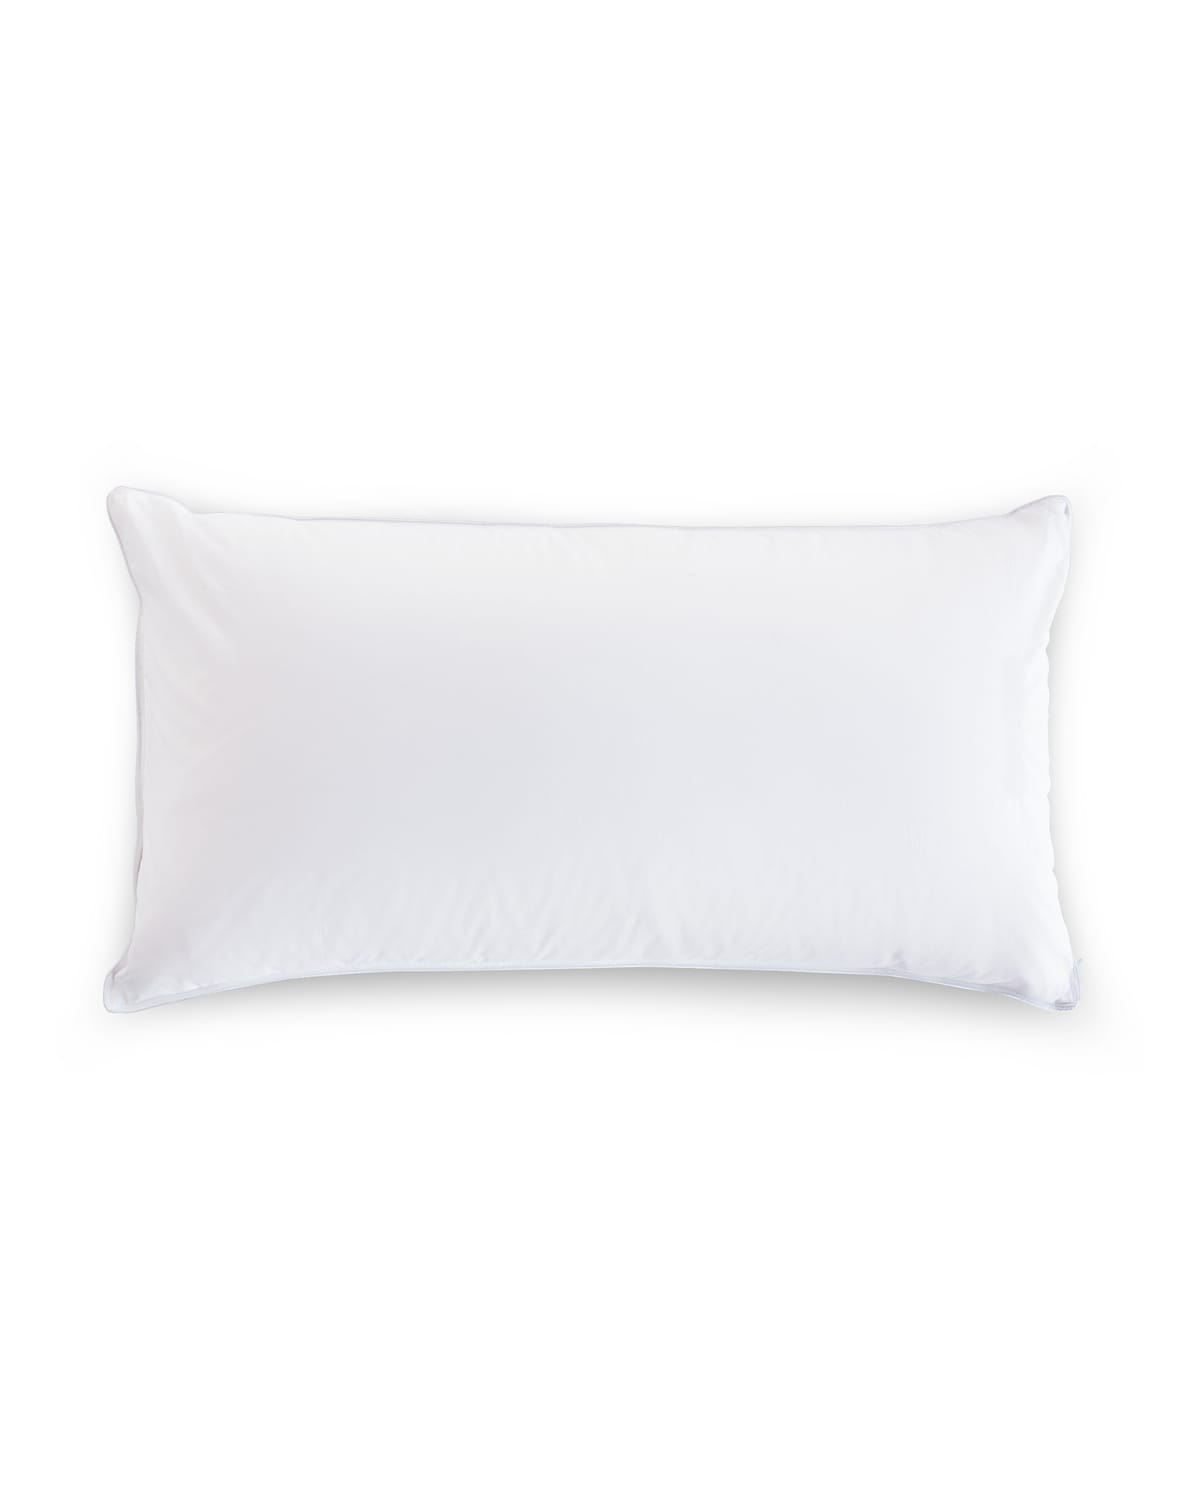 The Pillow Bar King Down Pillow, 20" X 36", Front Sleeper